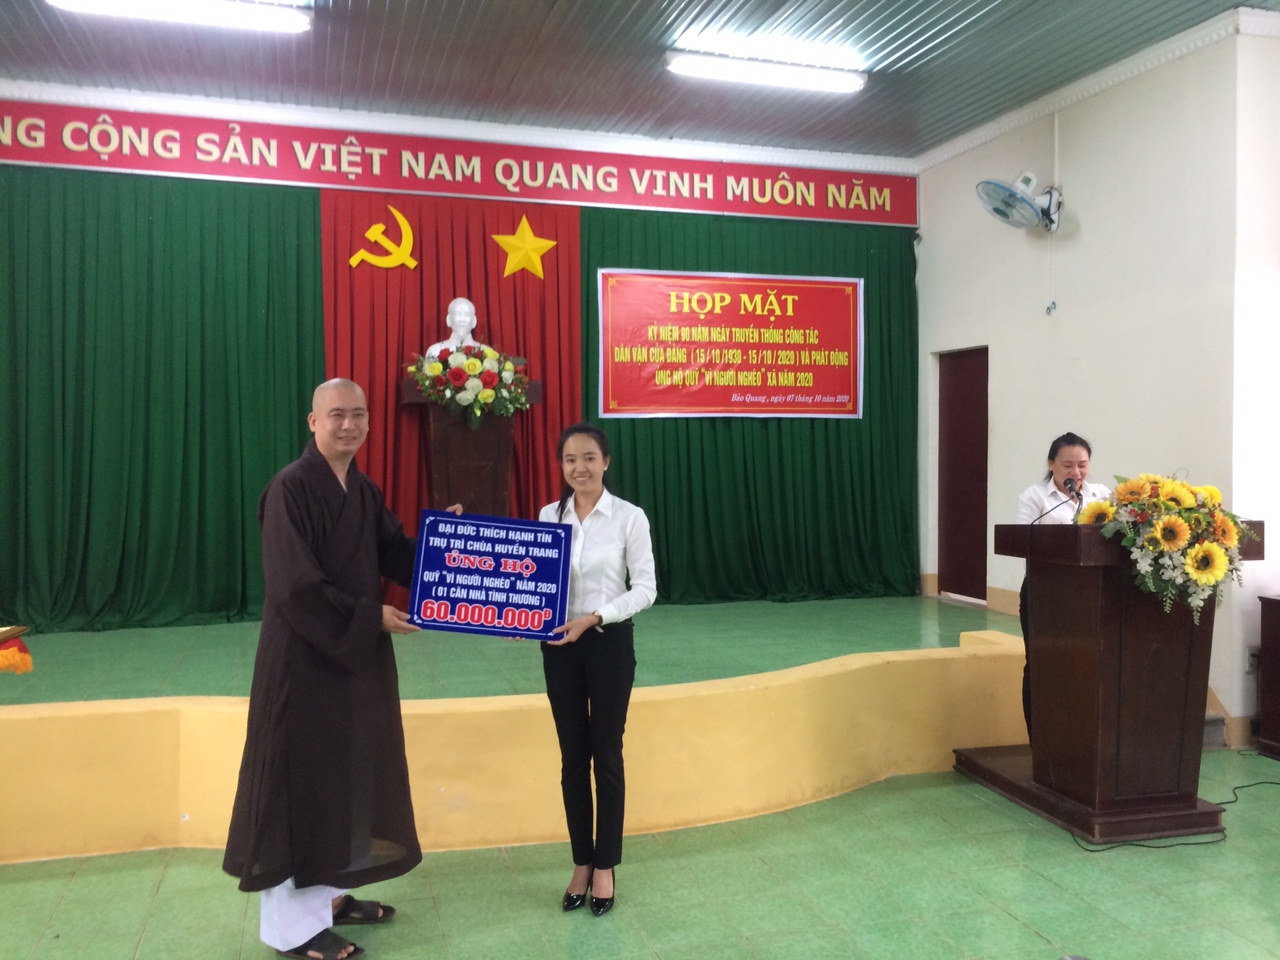 Bà Lương Thị Bảo Thùy, CT.MTTQ-Trưởng ban vận động Quỹ VNN xã nhận tiền ủng hộ Quỹ VNN tại buổi phát động.jpg